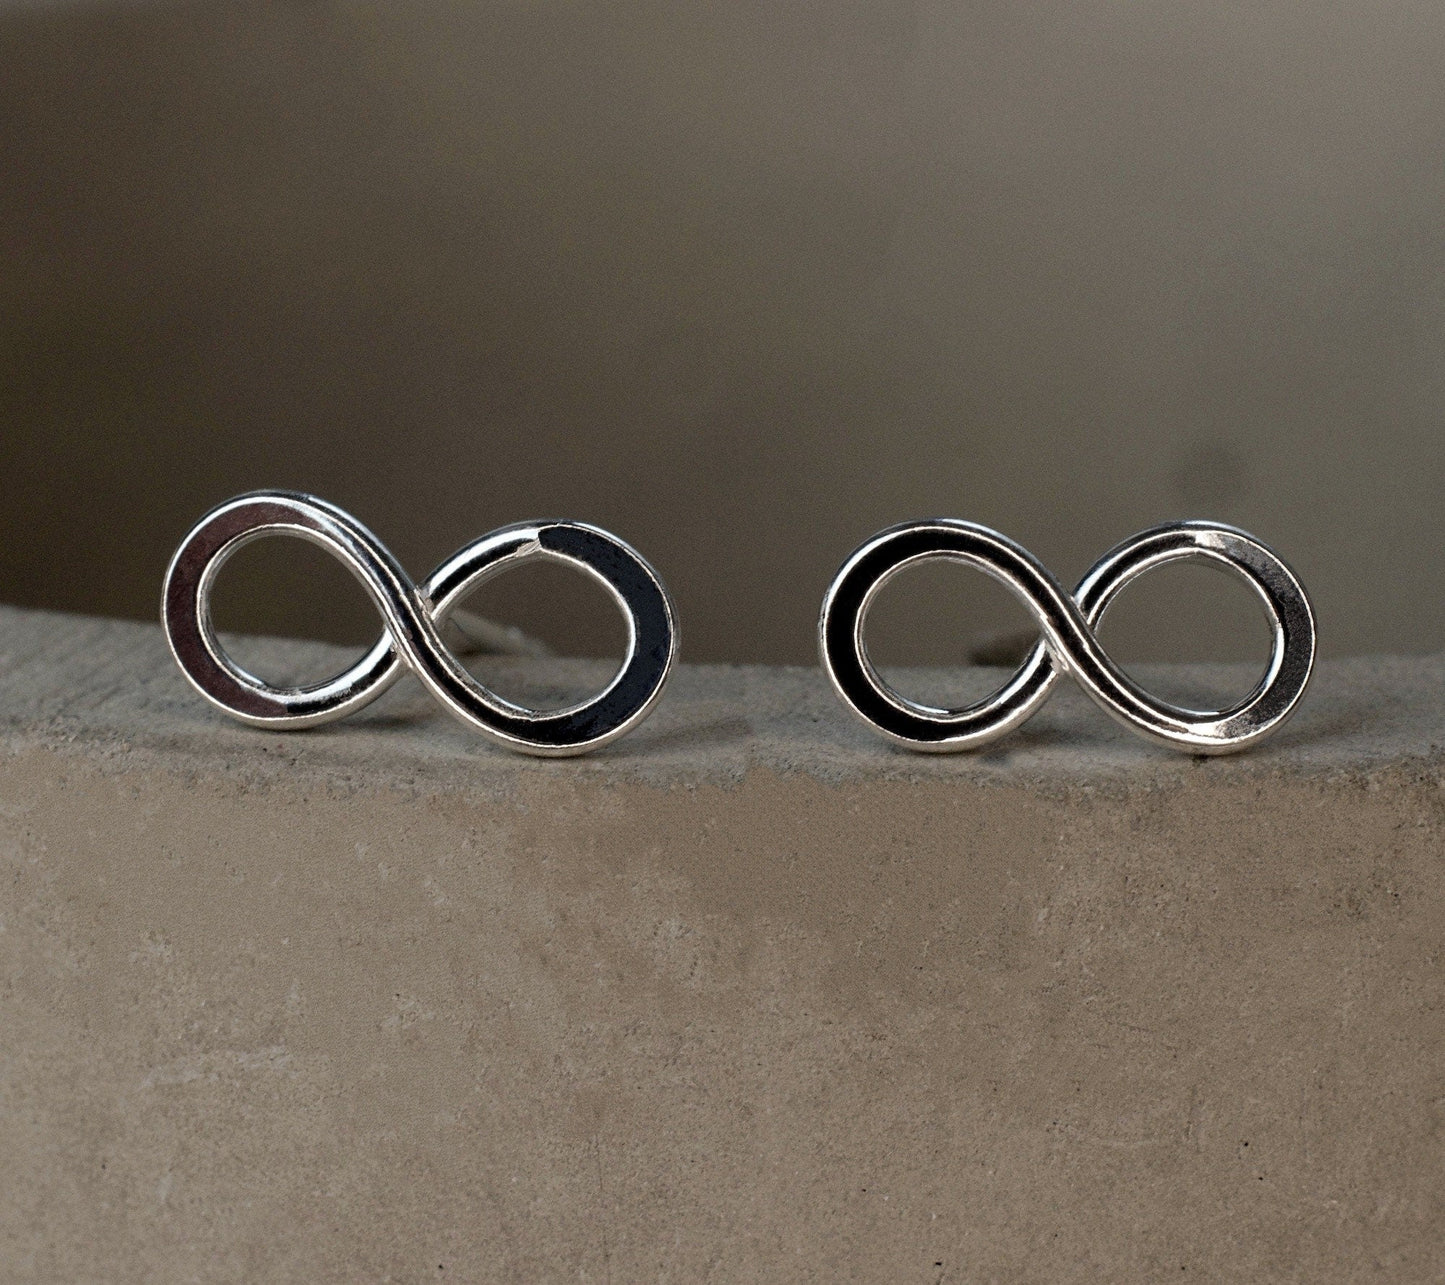 Infinity Mini Stud Earrings - 925 Sterling Silver Minimalist Jewelry - Ear925-110